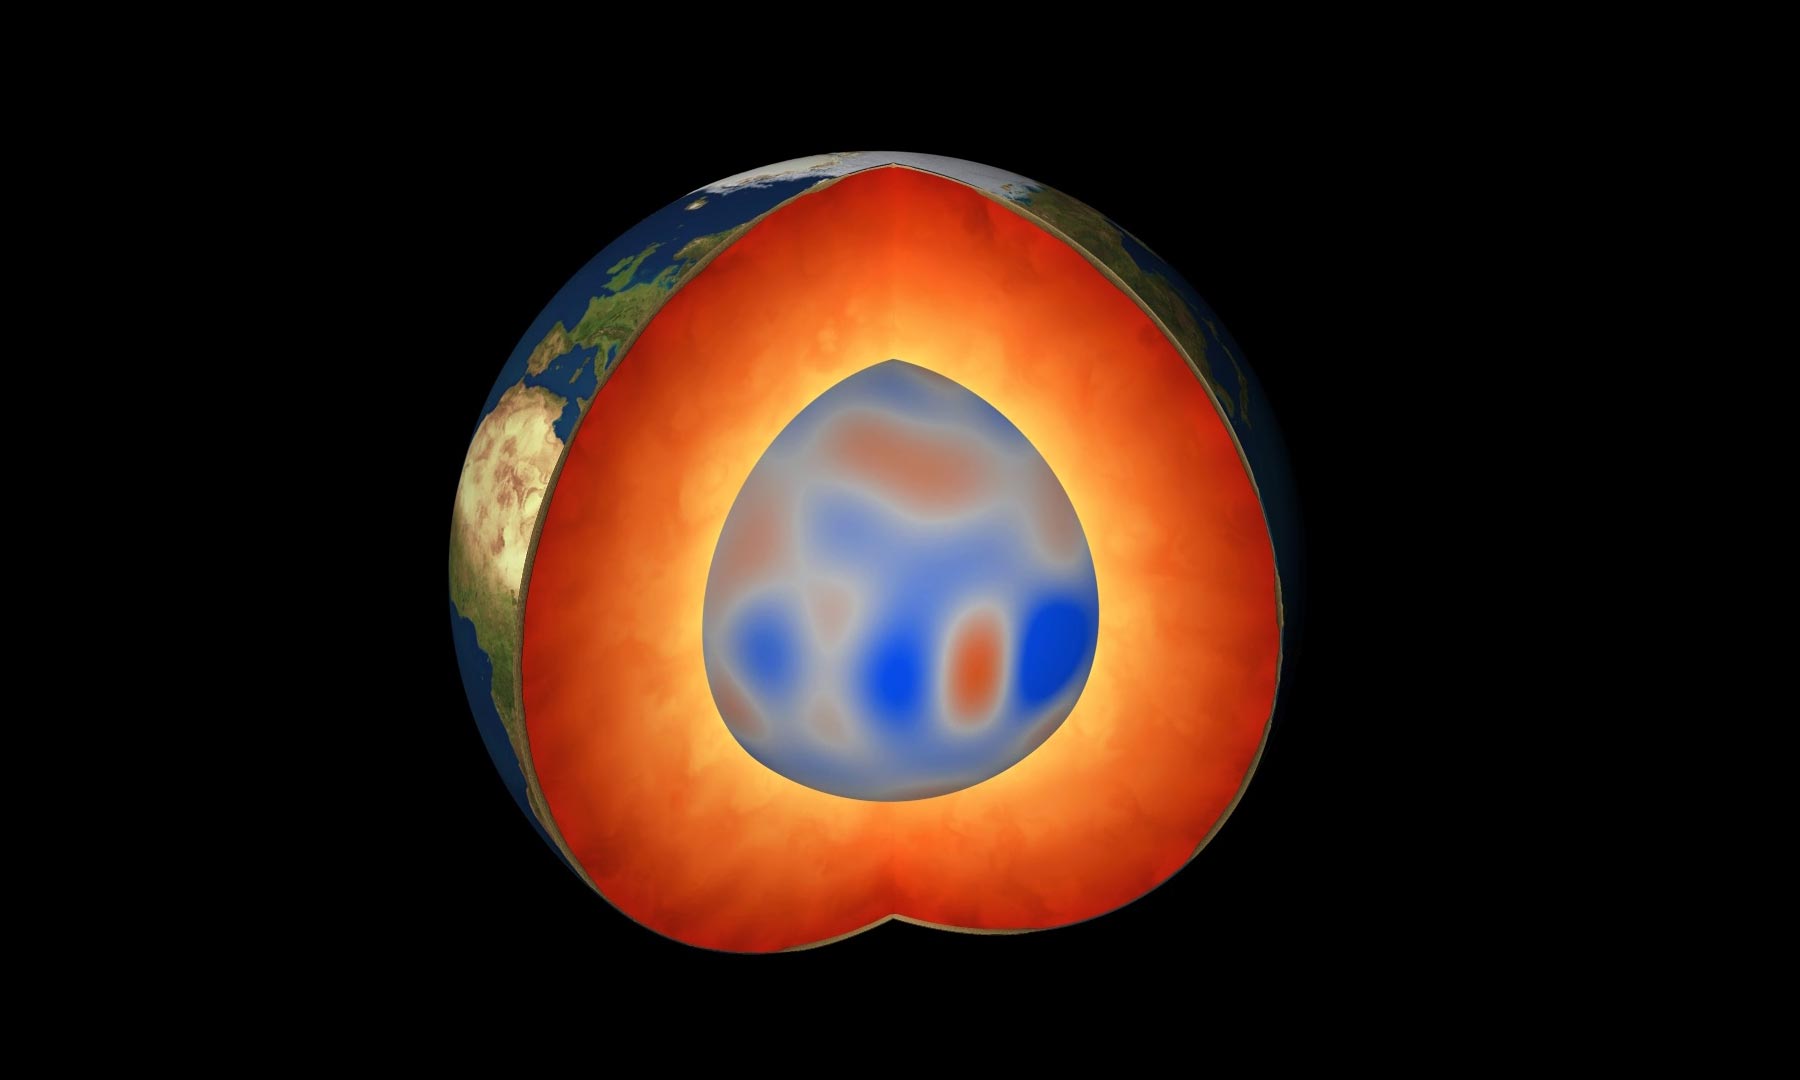 تم اكتشاف نوع جديد تمامًا من الموجات المغناطيسية التي تجتاح قلب الأرض الخارجي